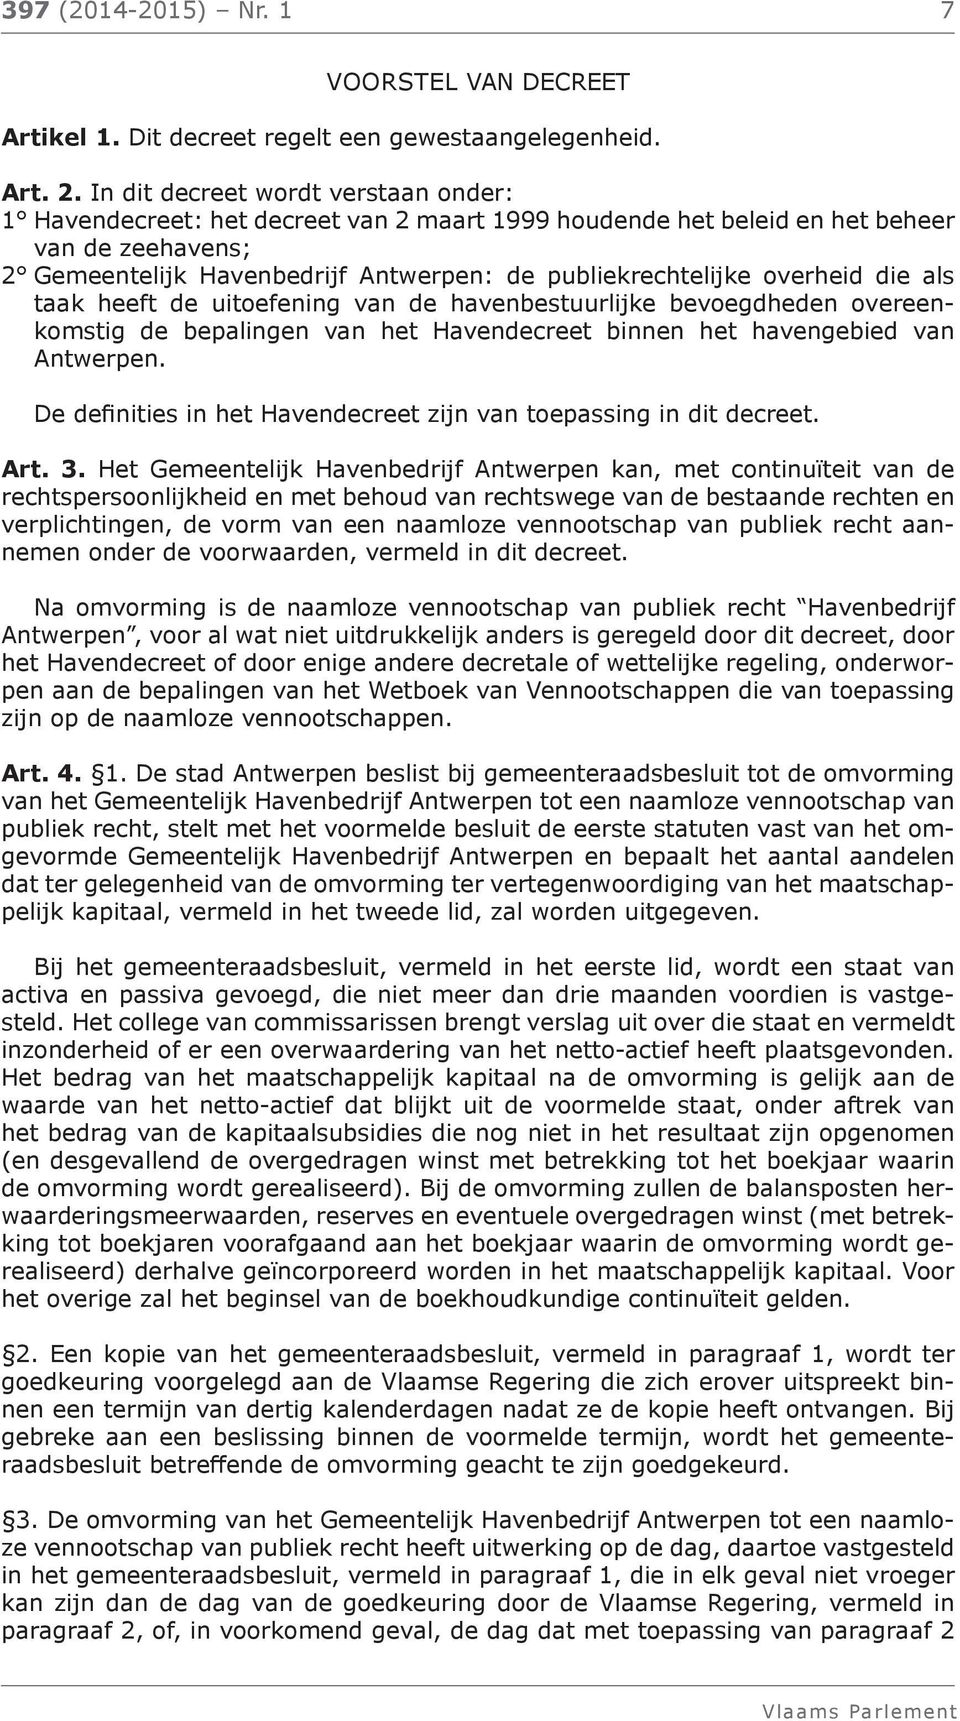 overheid die als taak heeft de uitoefening van de havenbestuurlijke bevoegdheden overeenkomstig de bepalingen van het Havendecreet binnen het havengebied van Antwerpen.